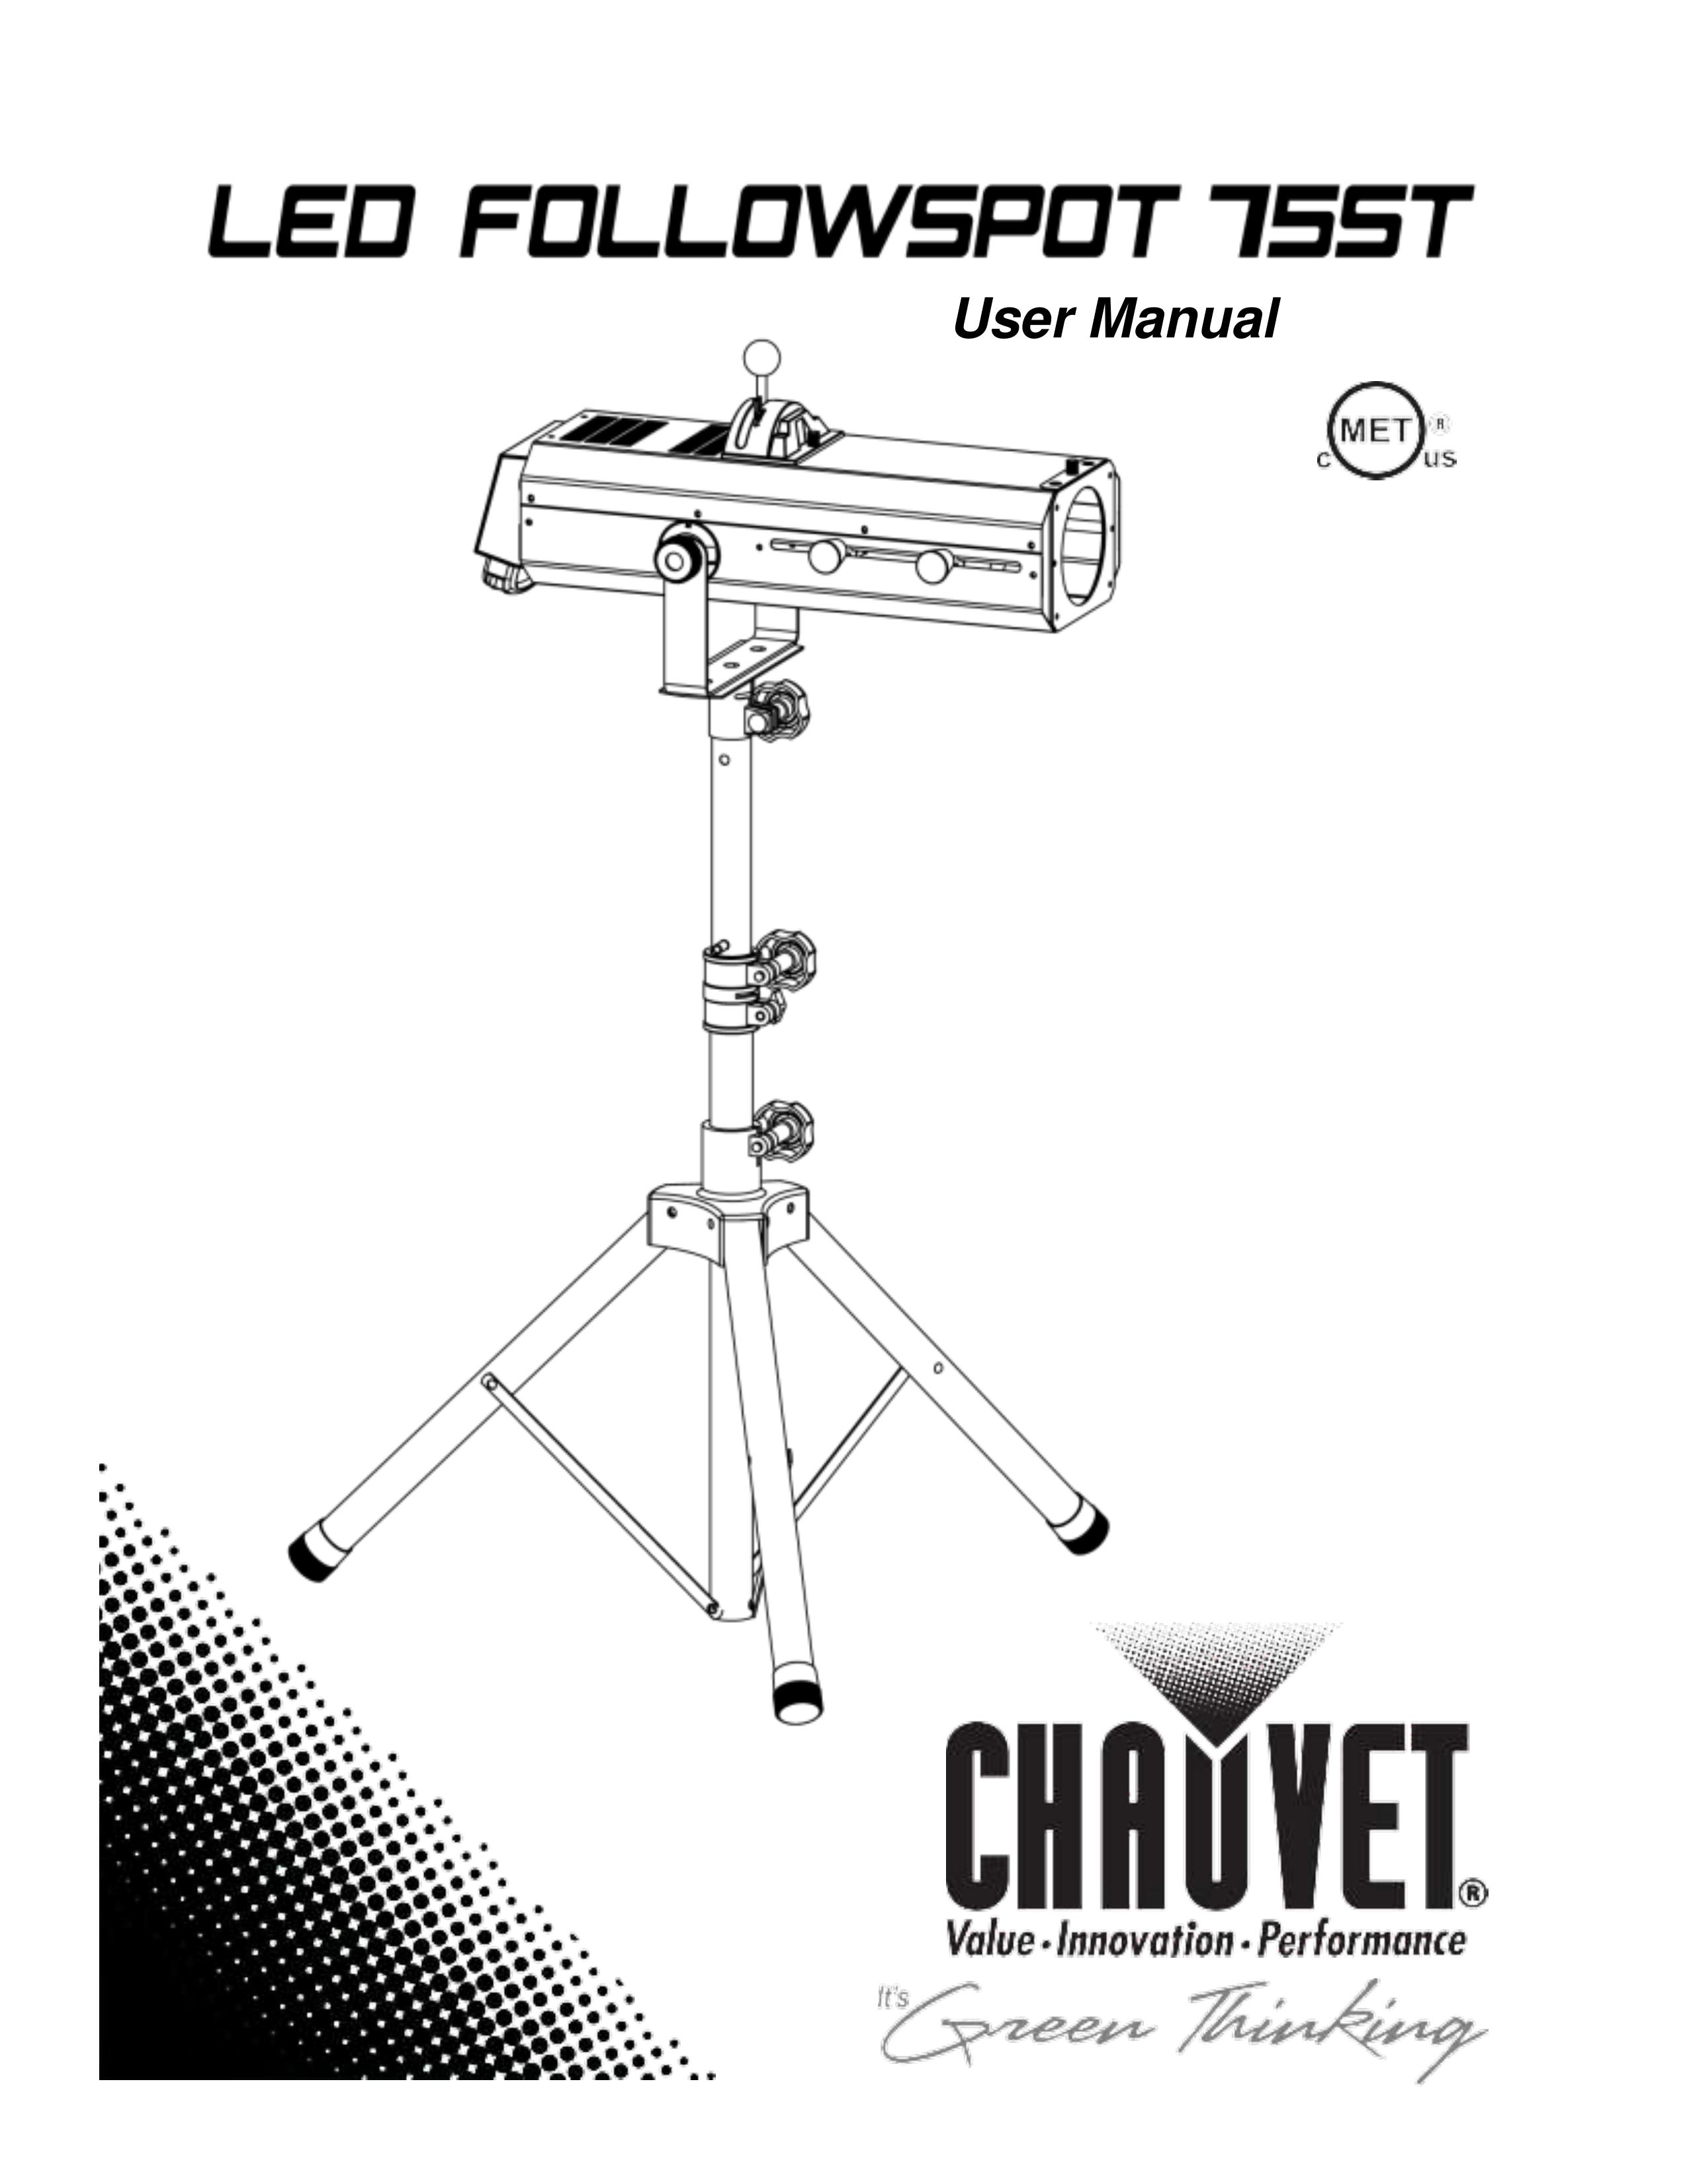 Chauvet 75ST Landscape Lighting User Manual